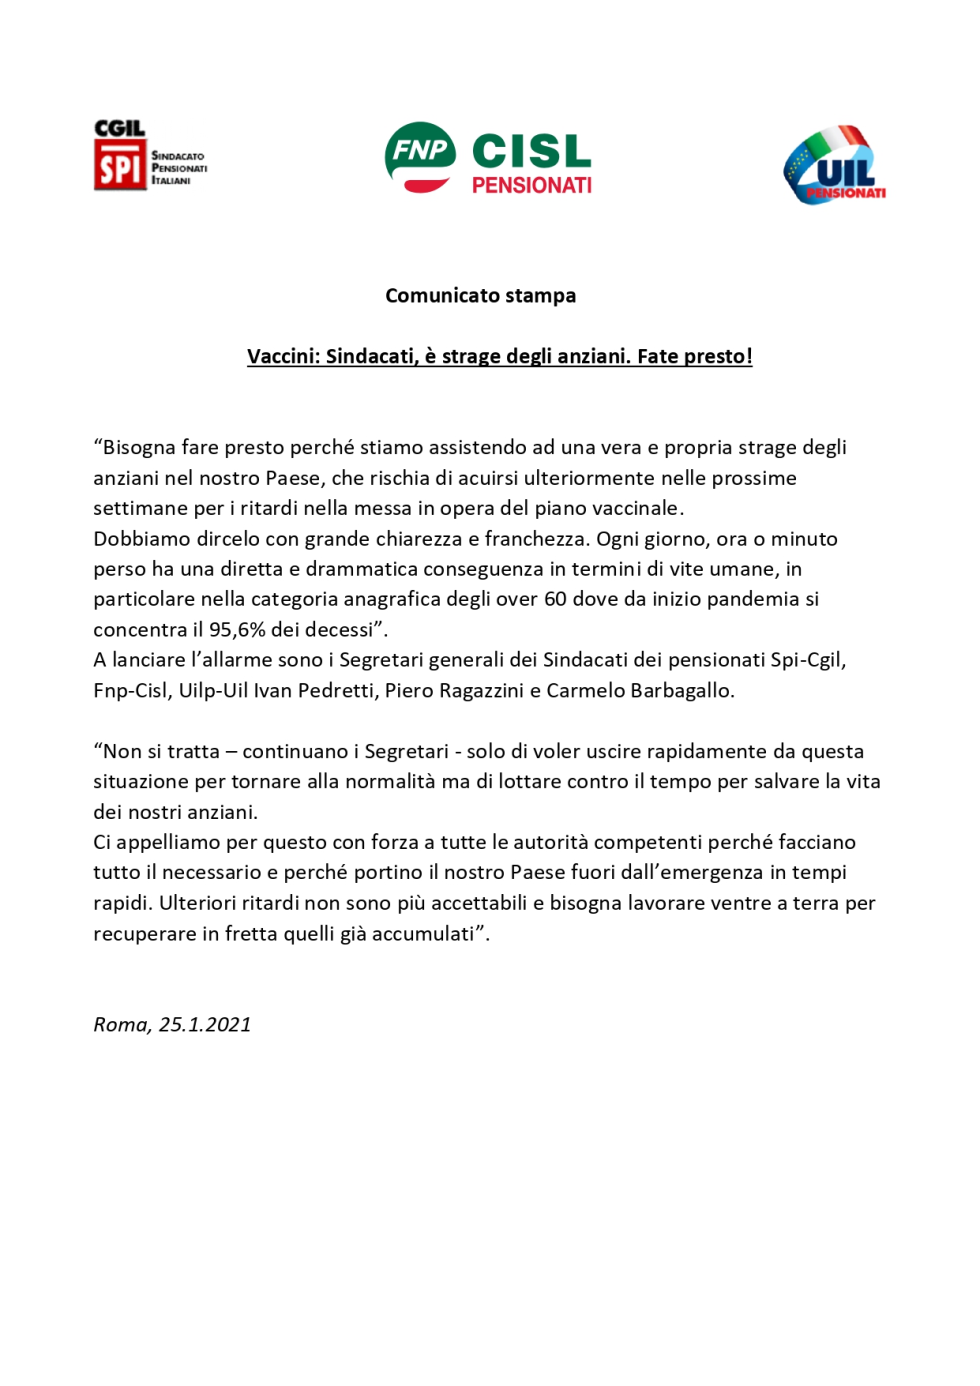 Comunicato stampa unitario Spi Fnp Uilp su vaccini - 25.01.2021